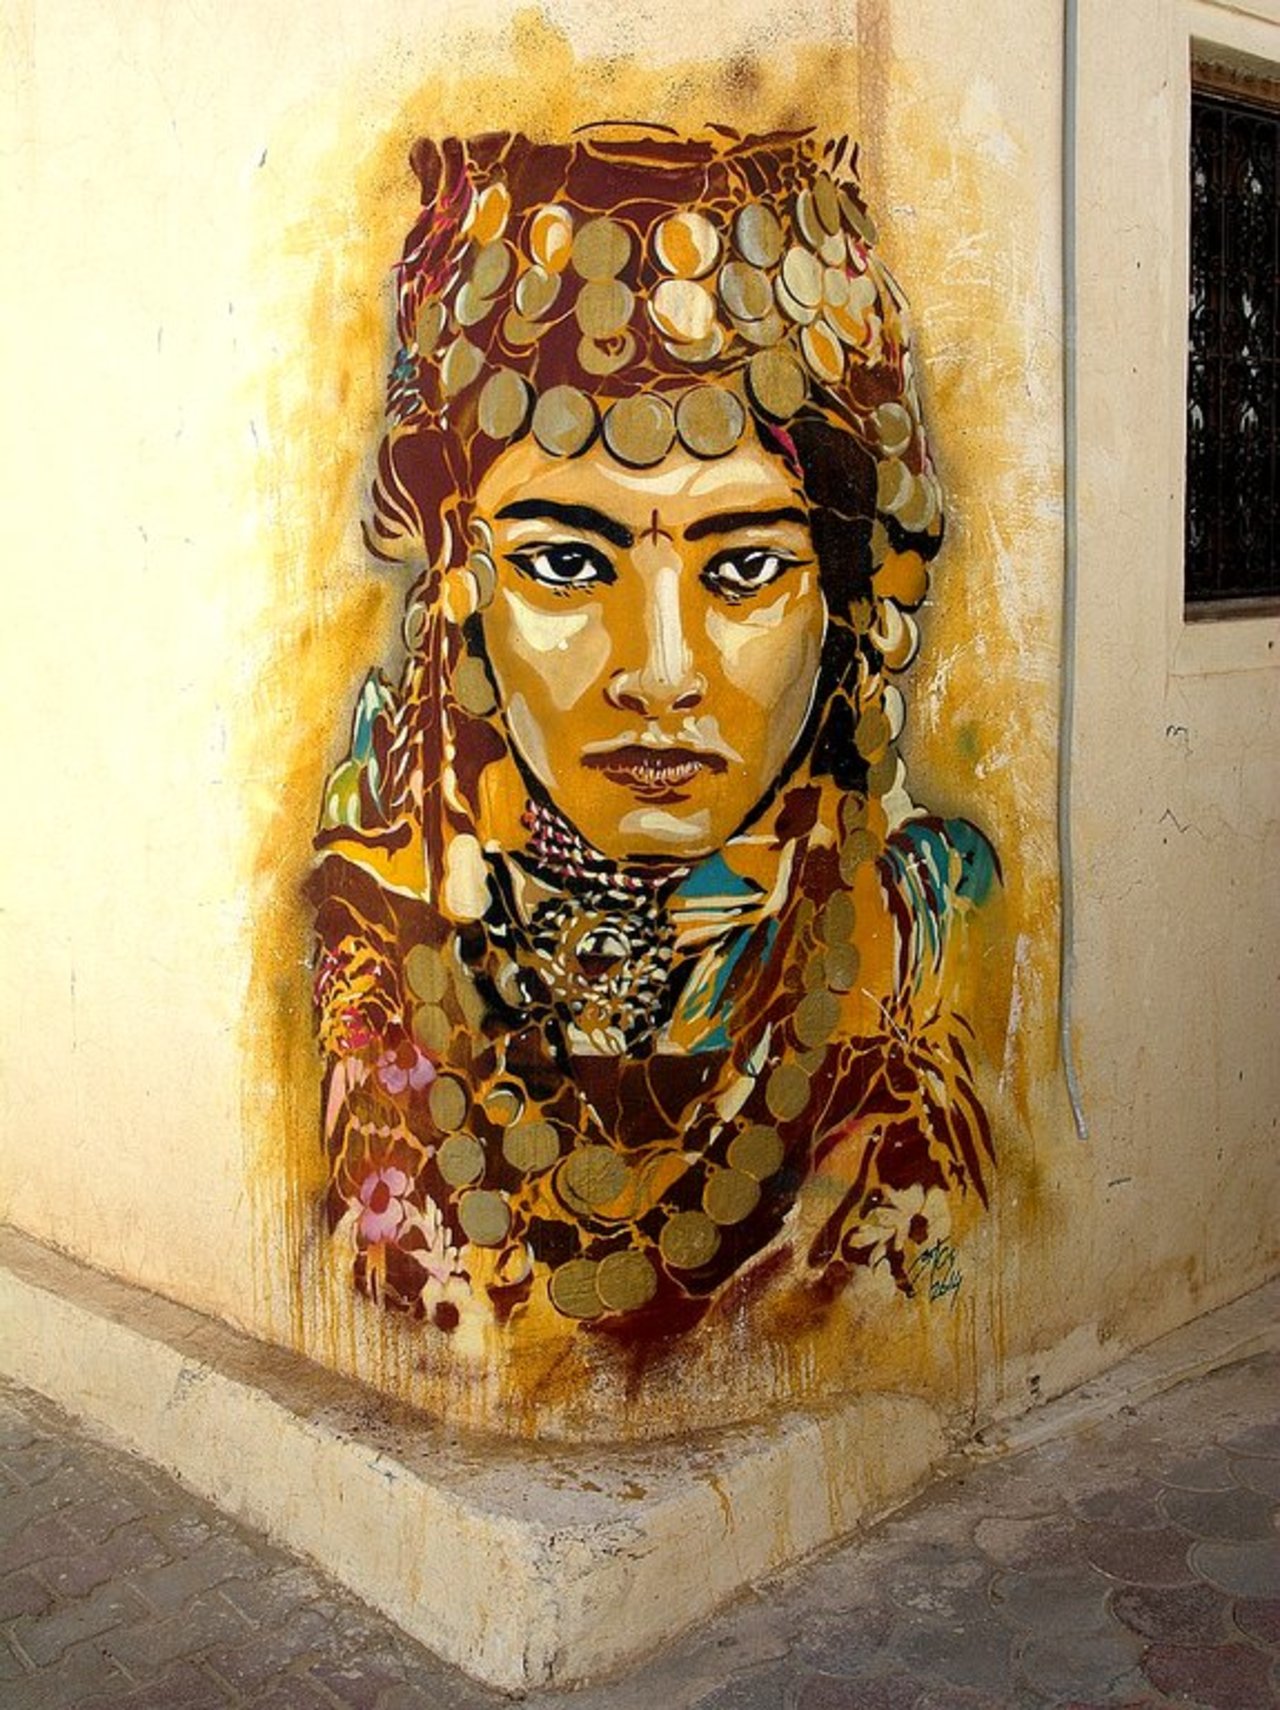 RT @urbacolors: Street Art by btoy in # http://www.urbacolors.com #art #mural #graffiti #streetart https://t.co/rBPiD1WwrE